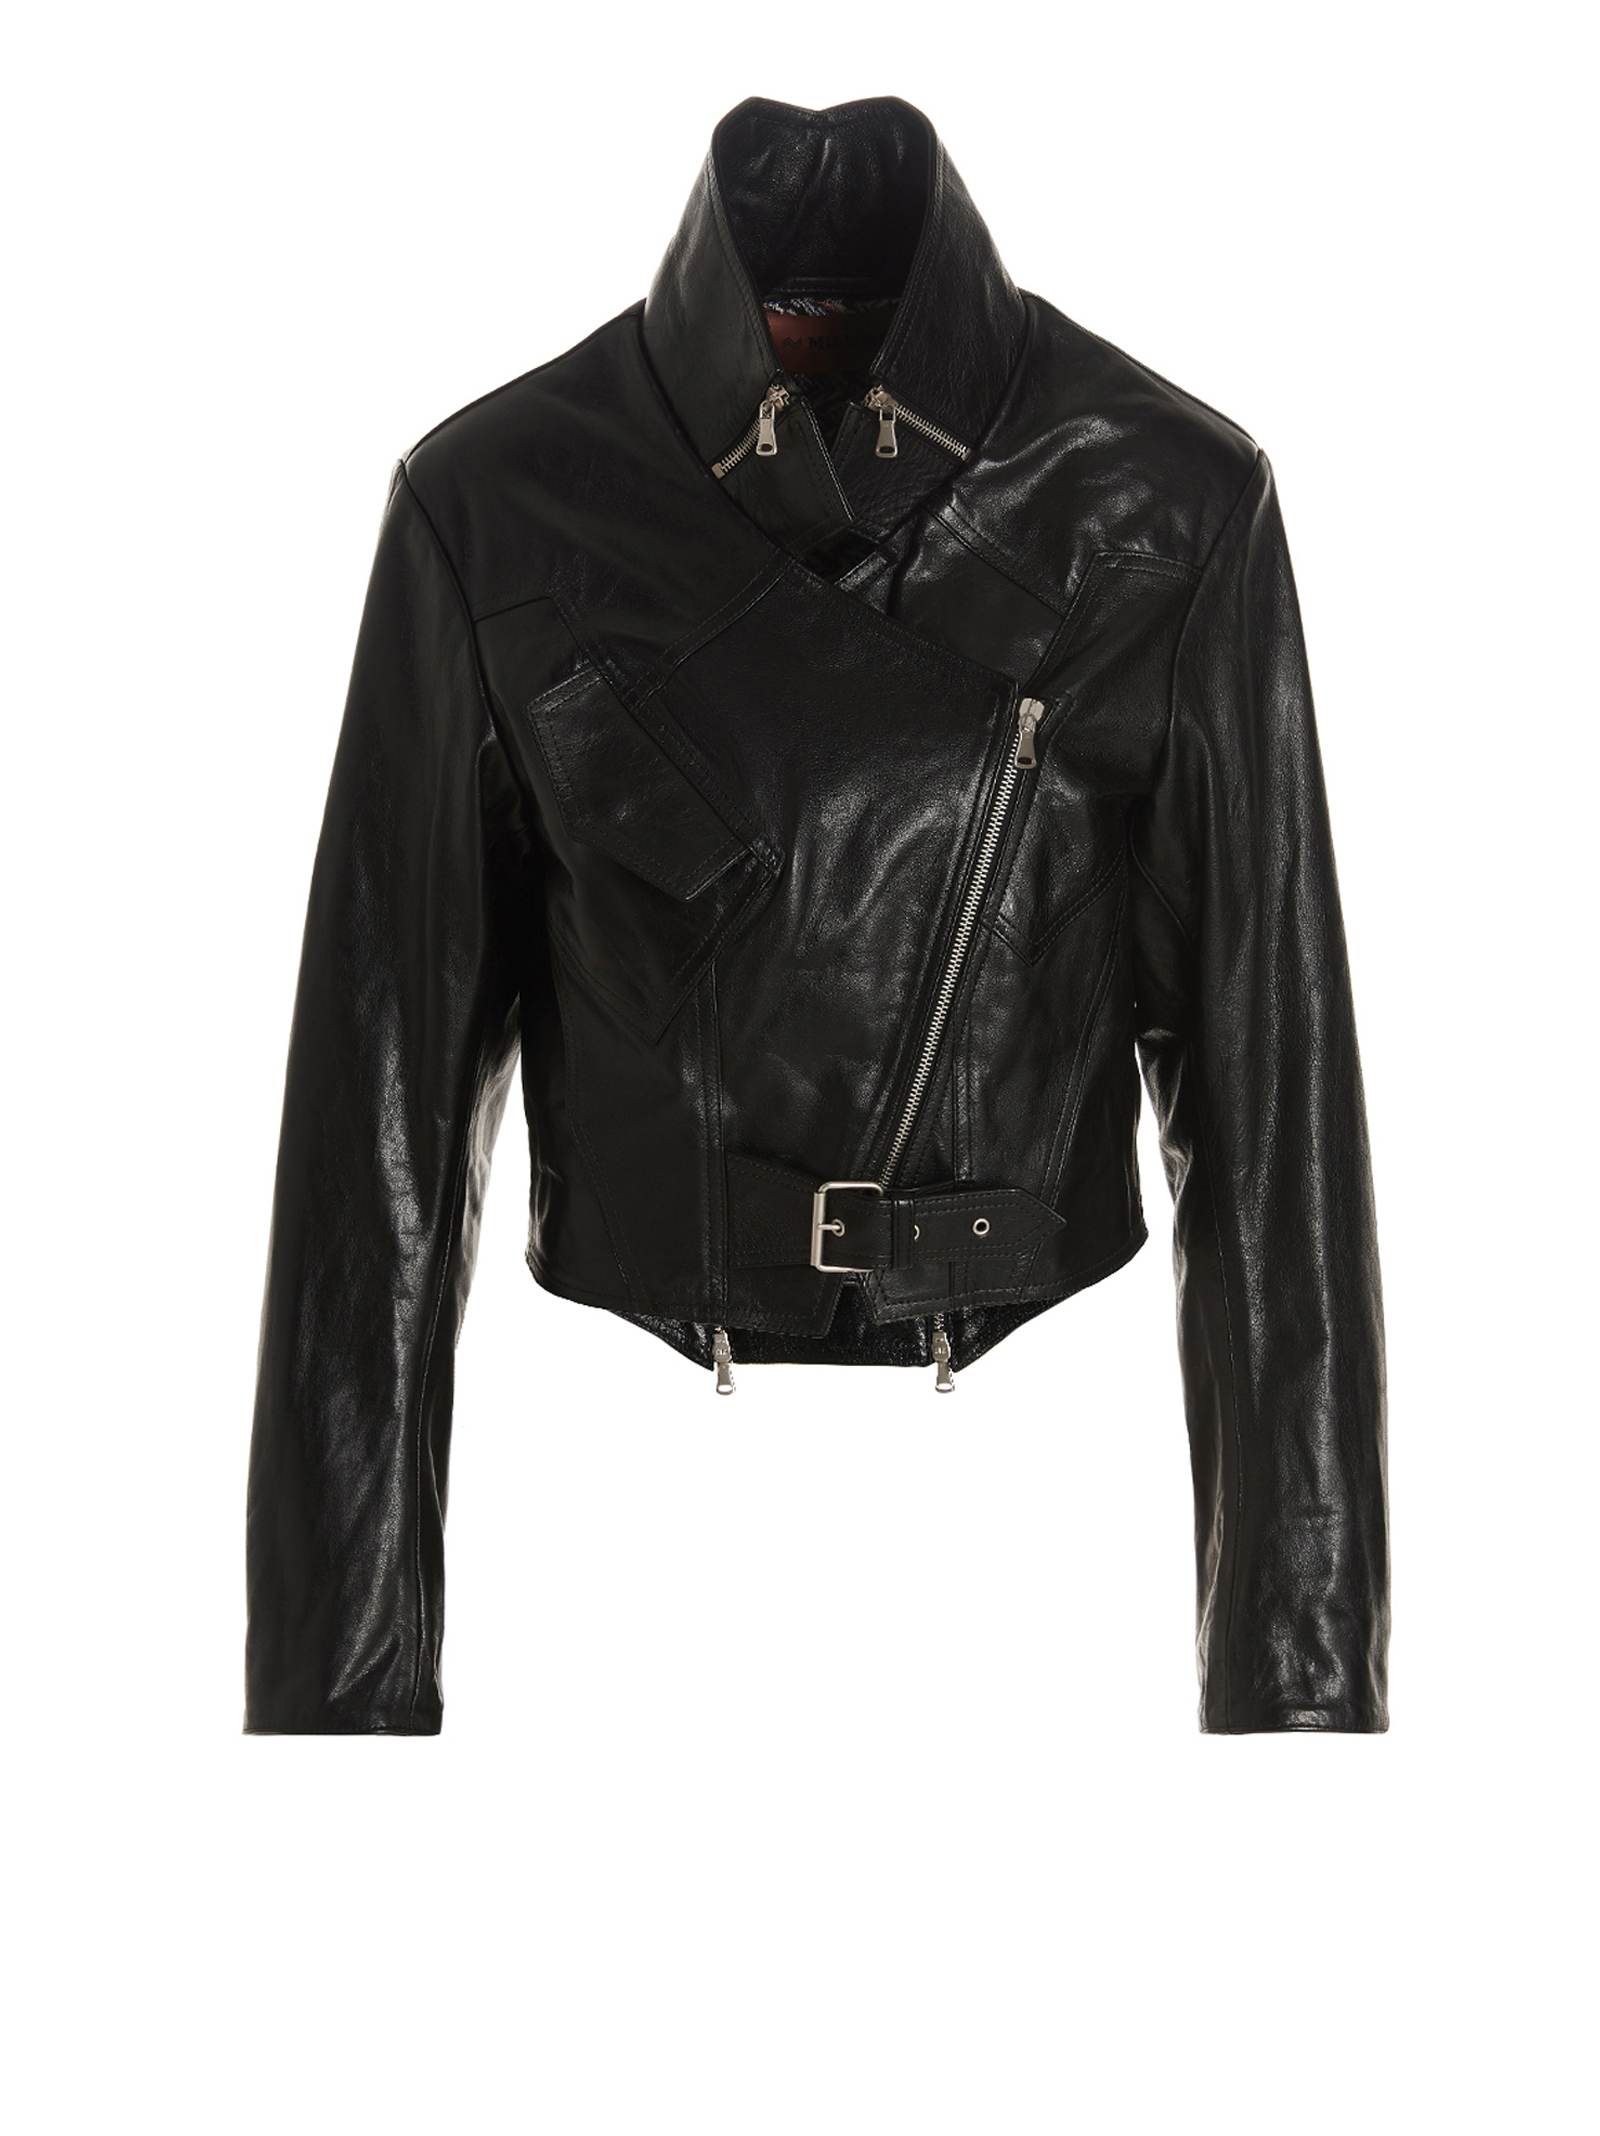 Manteaux Et Blousons Pour Femme - Missoni - En Leather Black - Taille:  -